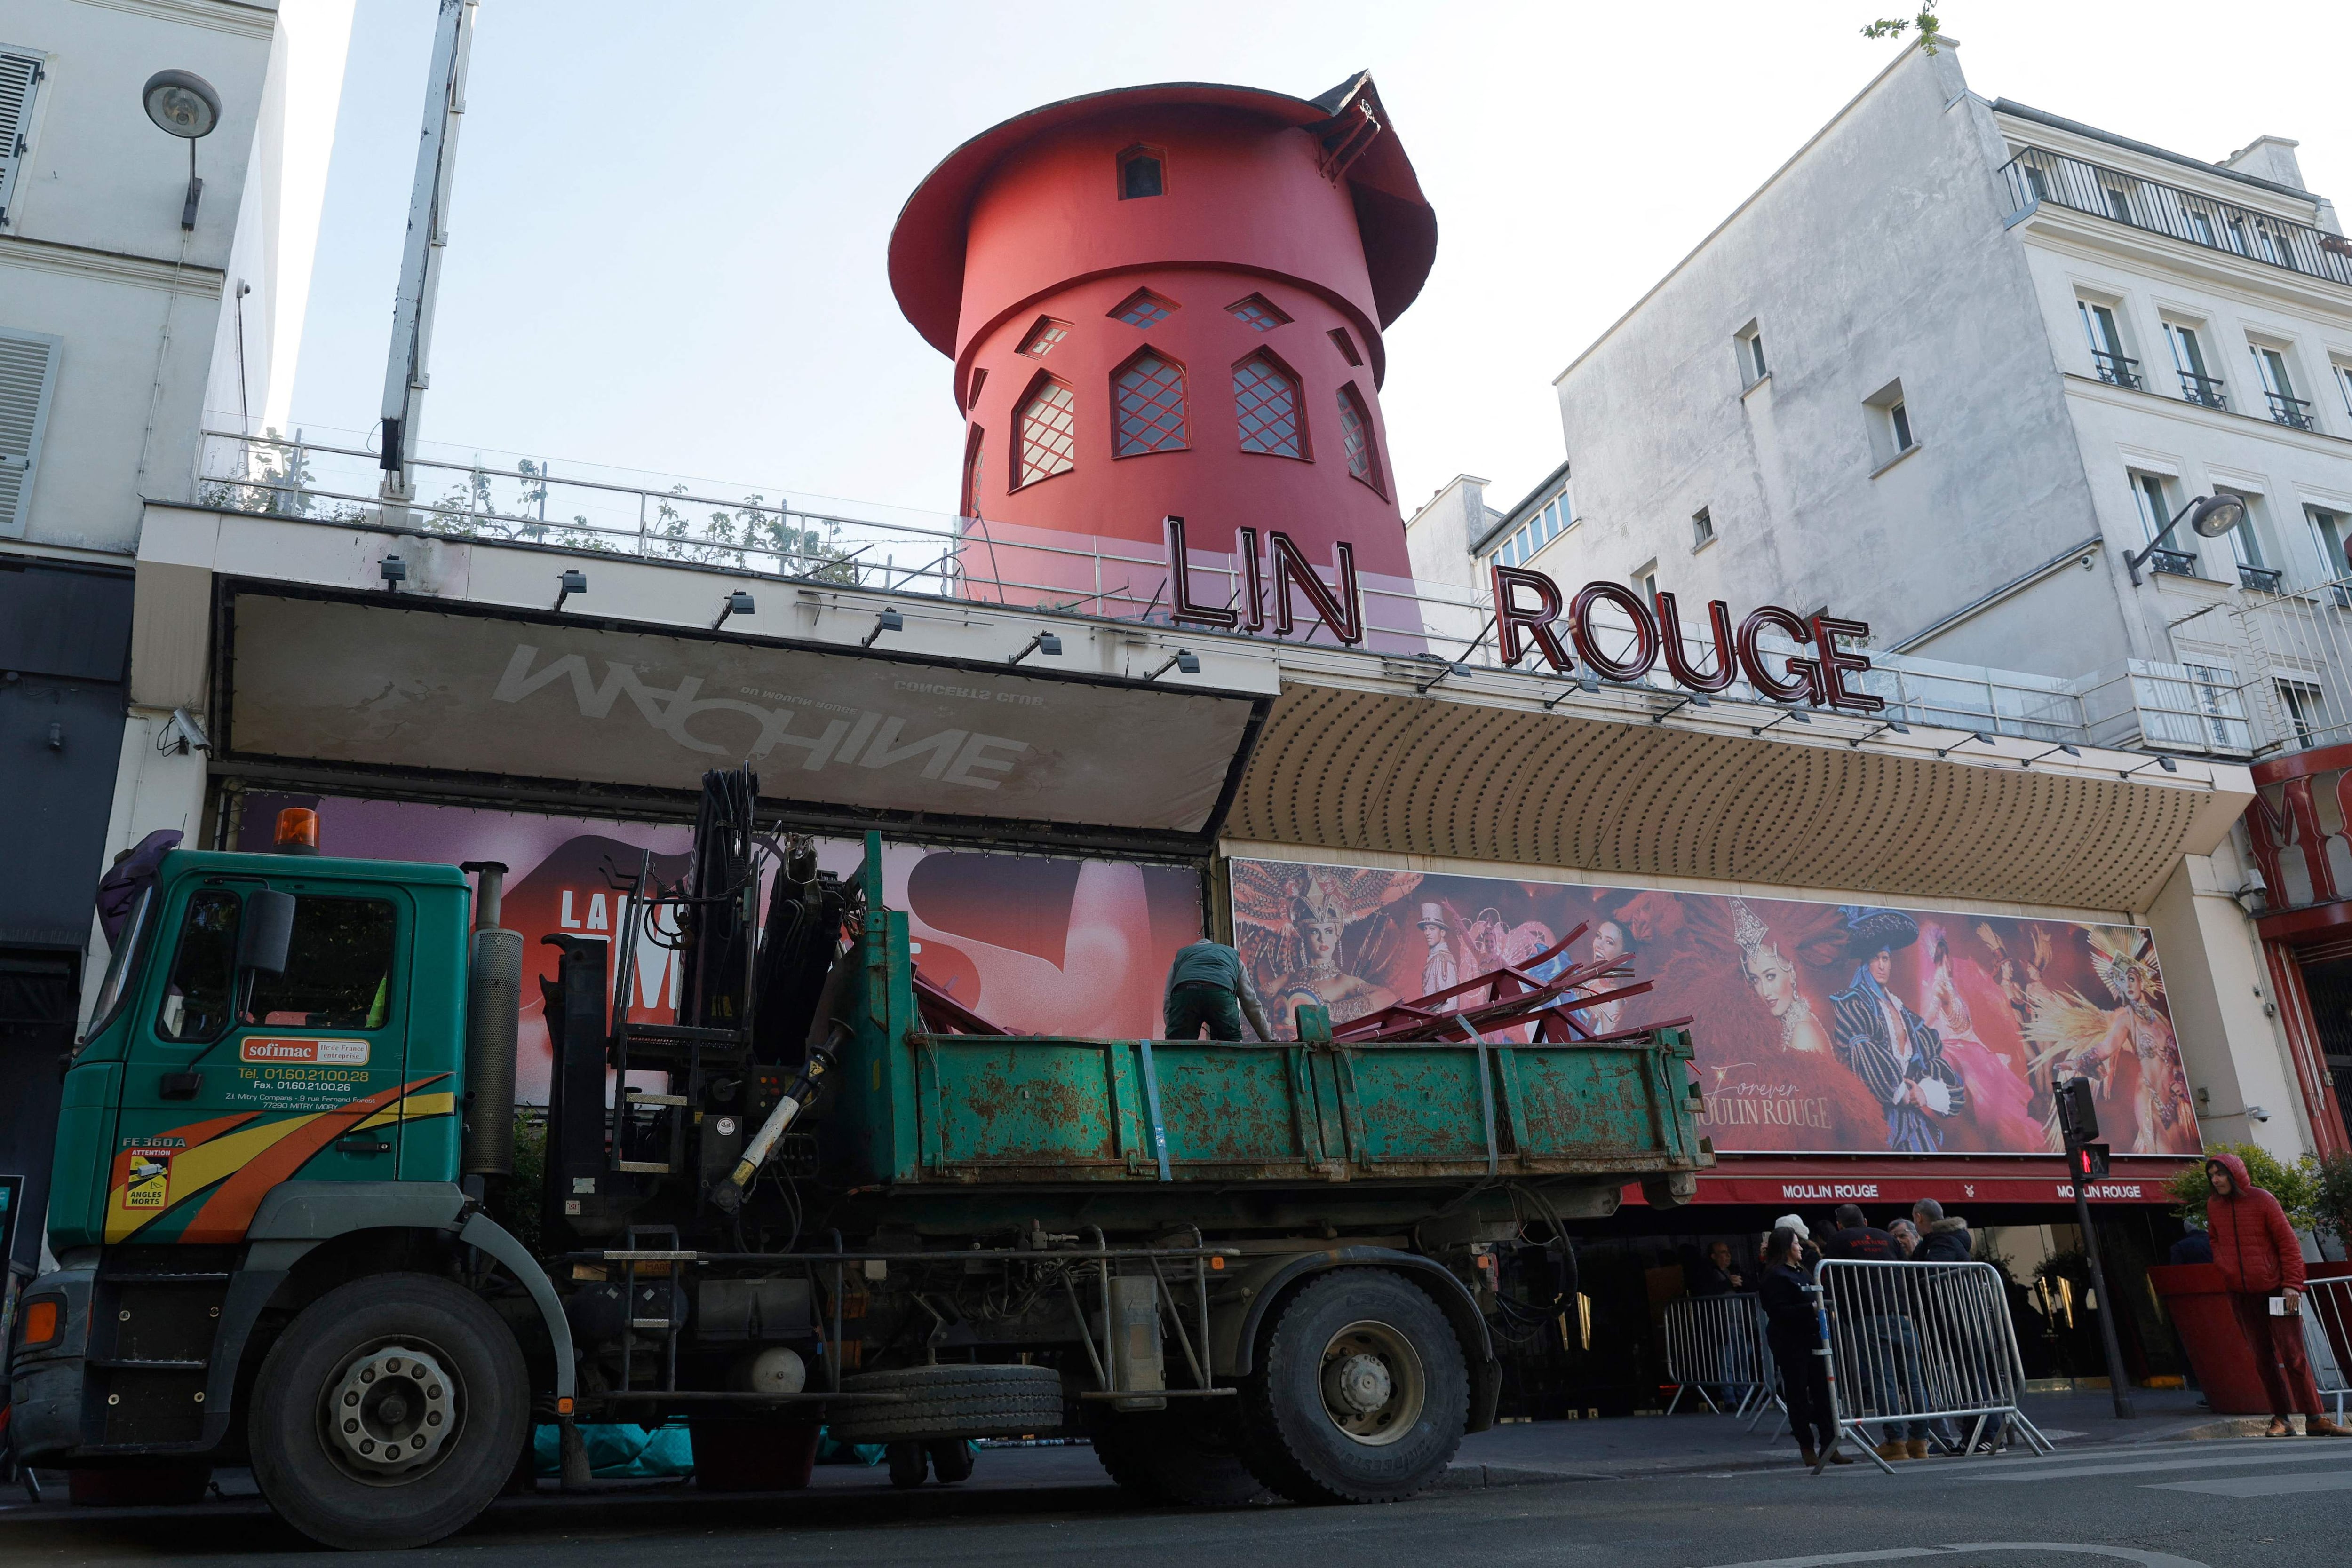 Los trabajadores cargan las aspas del molino de viento del Moulin Rouge que se derrumbó durante la noche sin causar heridos, dijeron los bomberos a la AFP, en París, el 25 de abril de 2024. (Foto de Geoffroy VAN DER HASSELT / AFP).